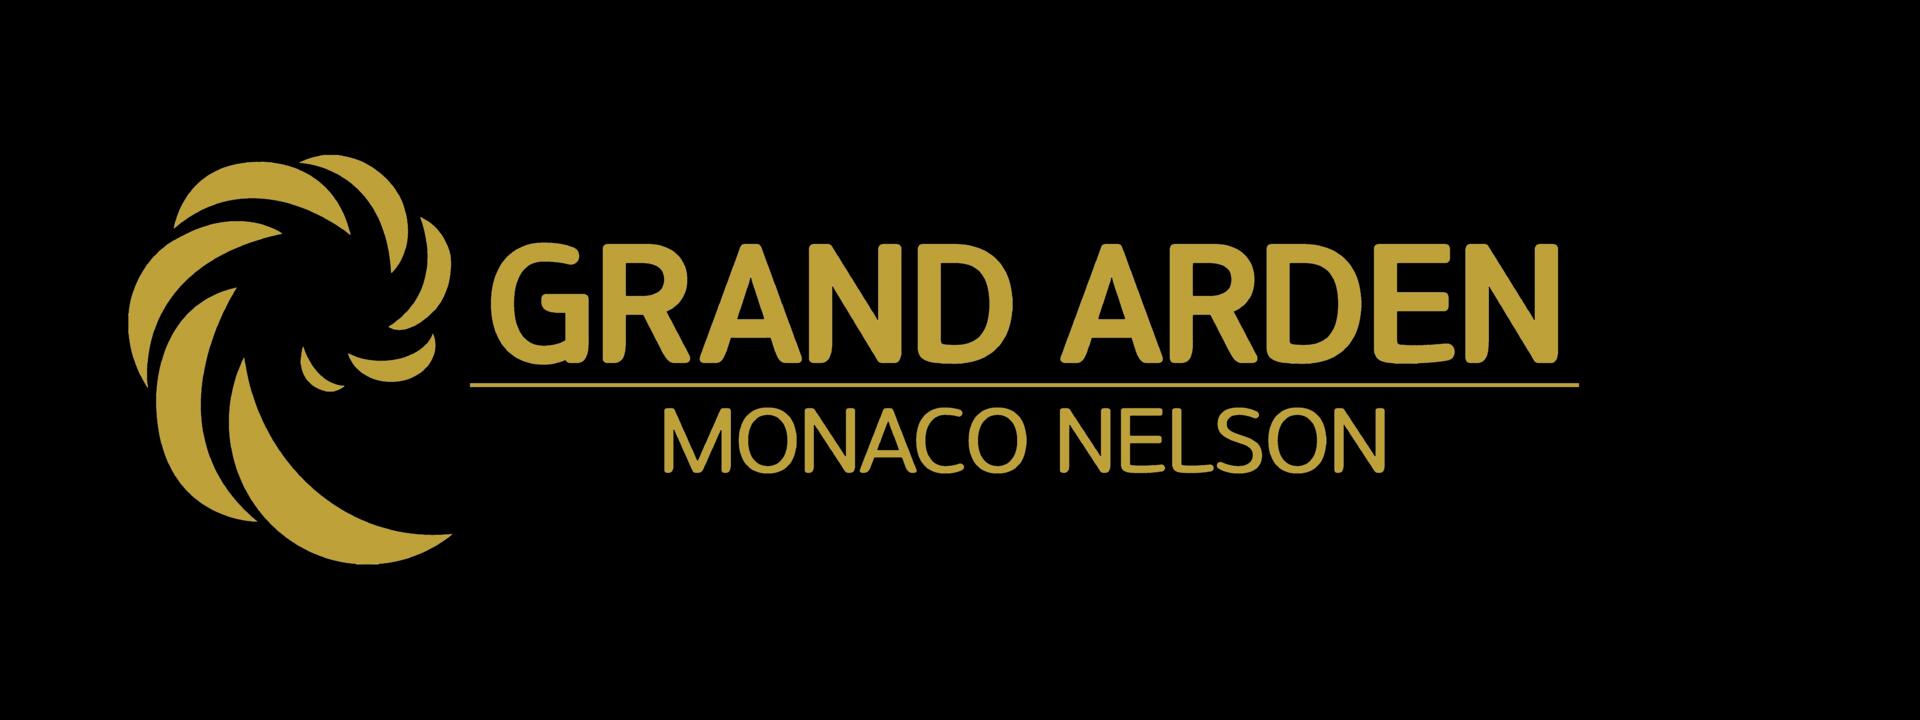 grand-arden-logo-black.jpg